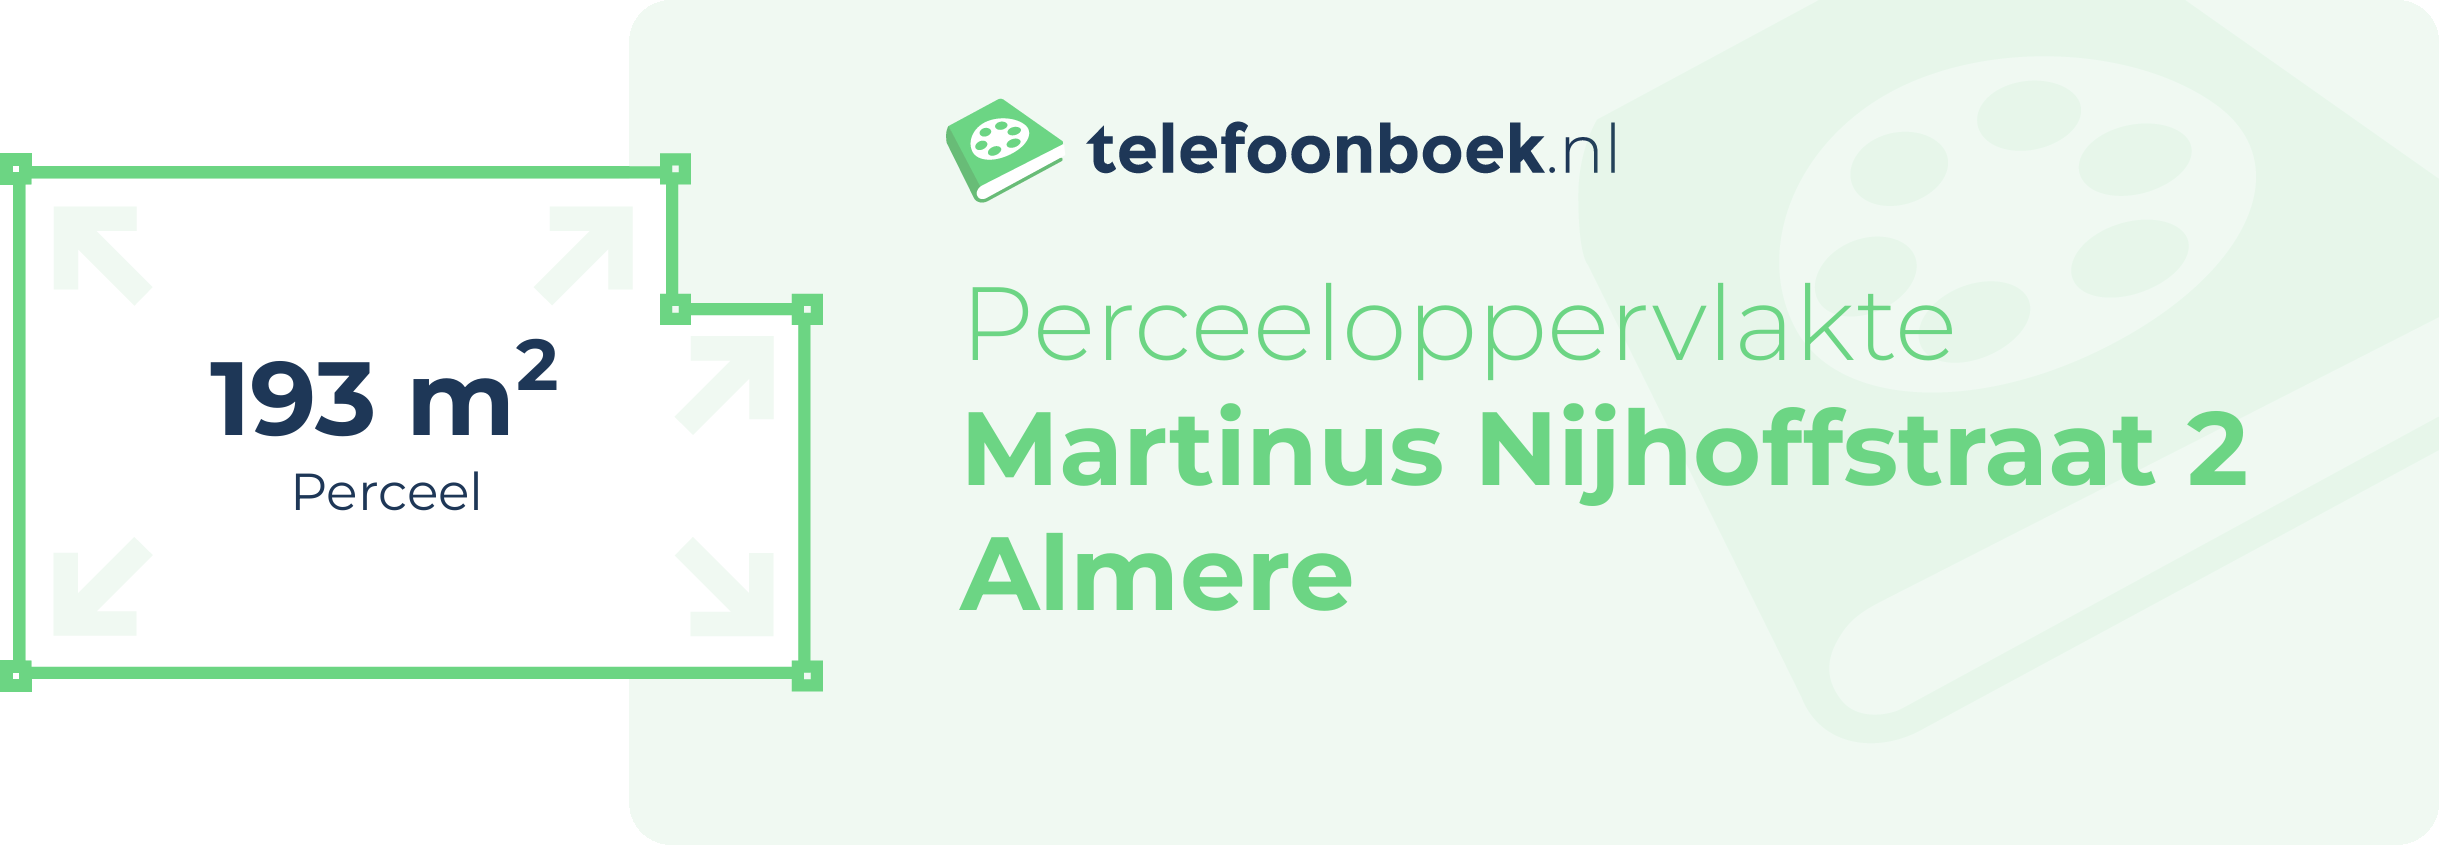 Perceeloppervlakte Martinus Nijhoffstraat 2 Almere